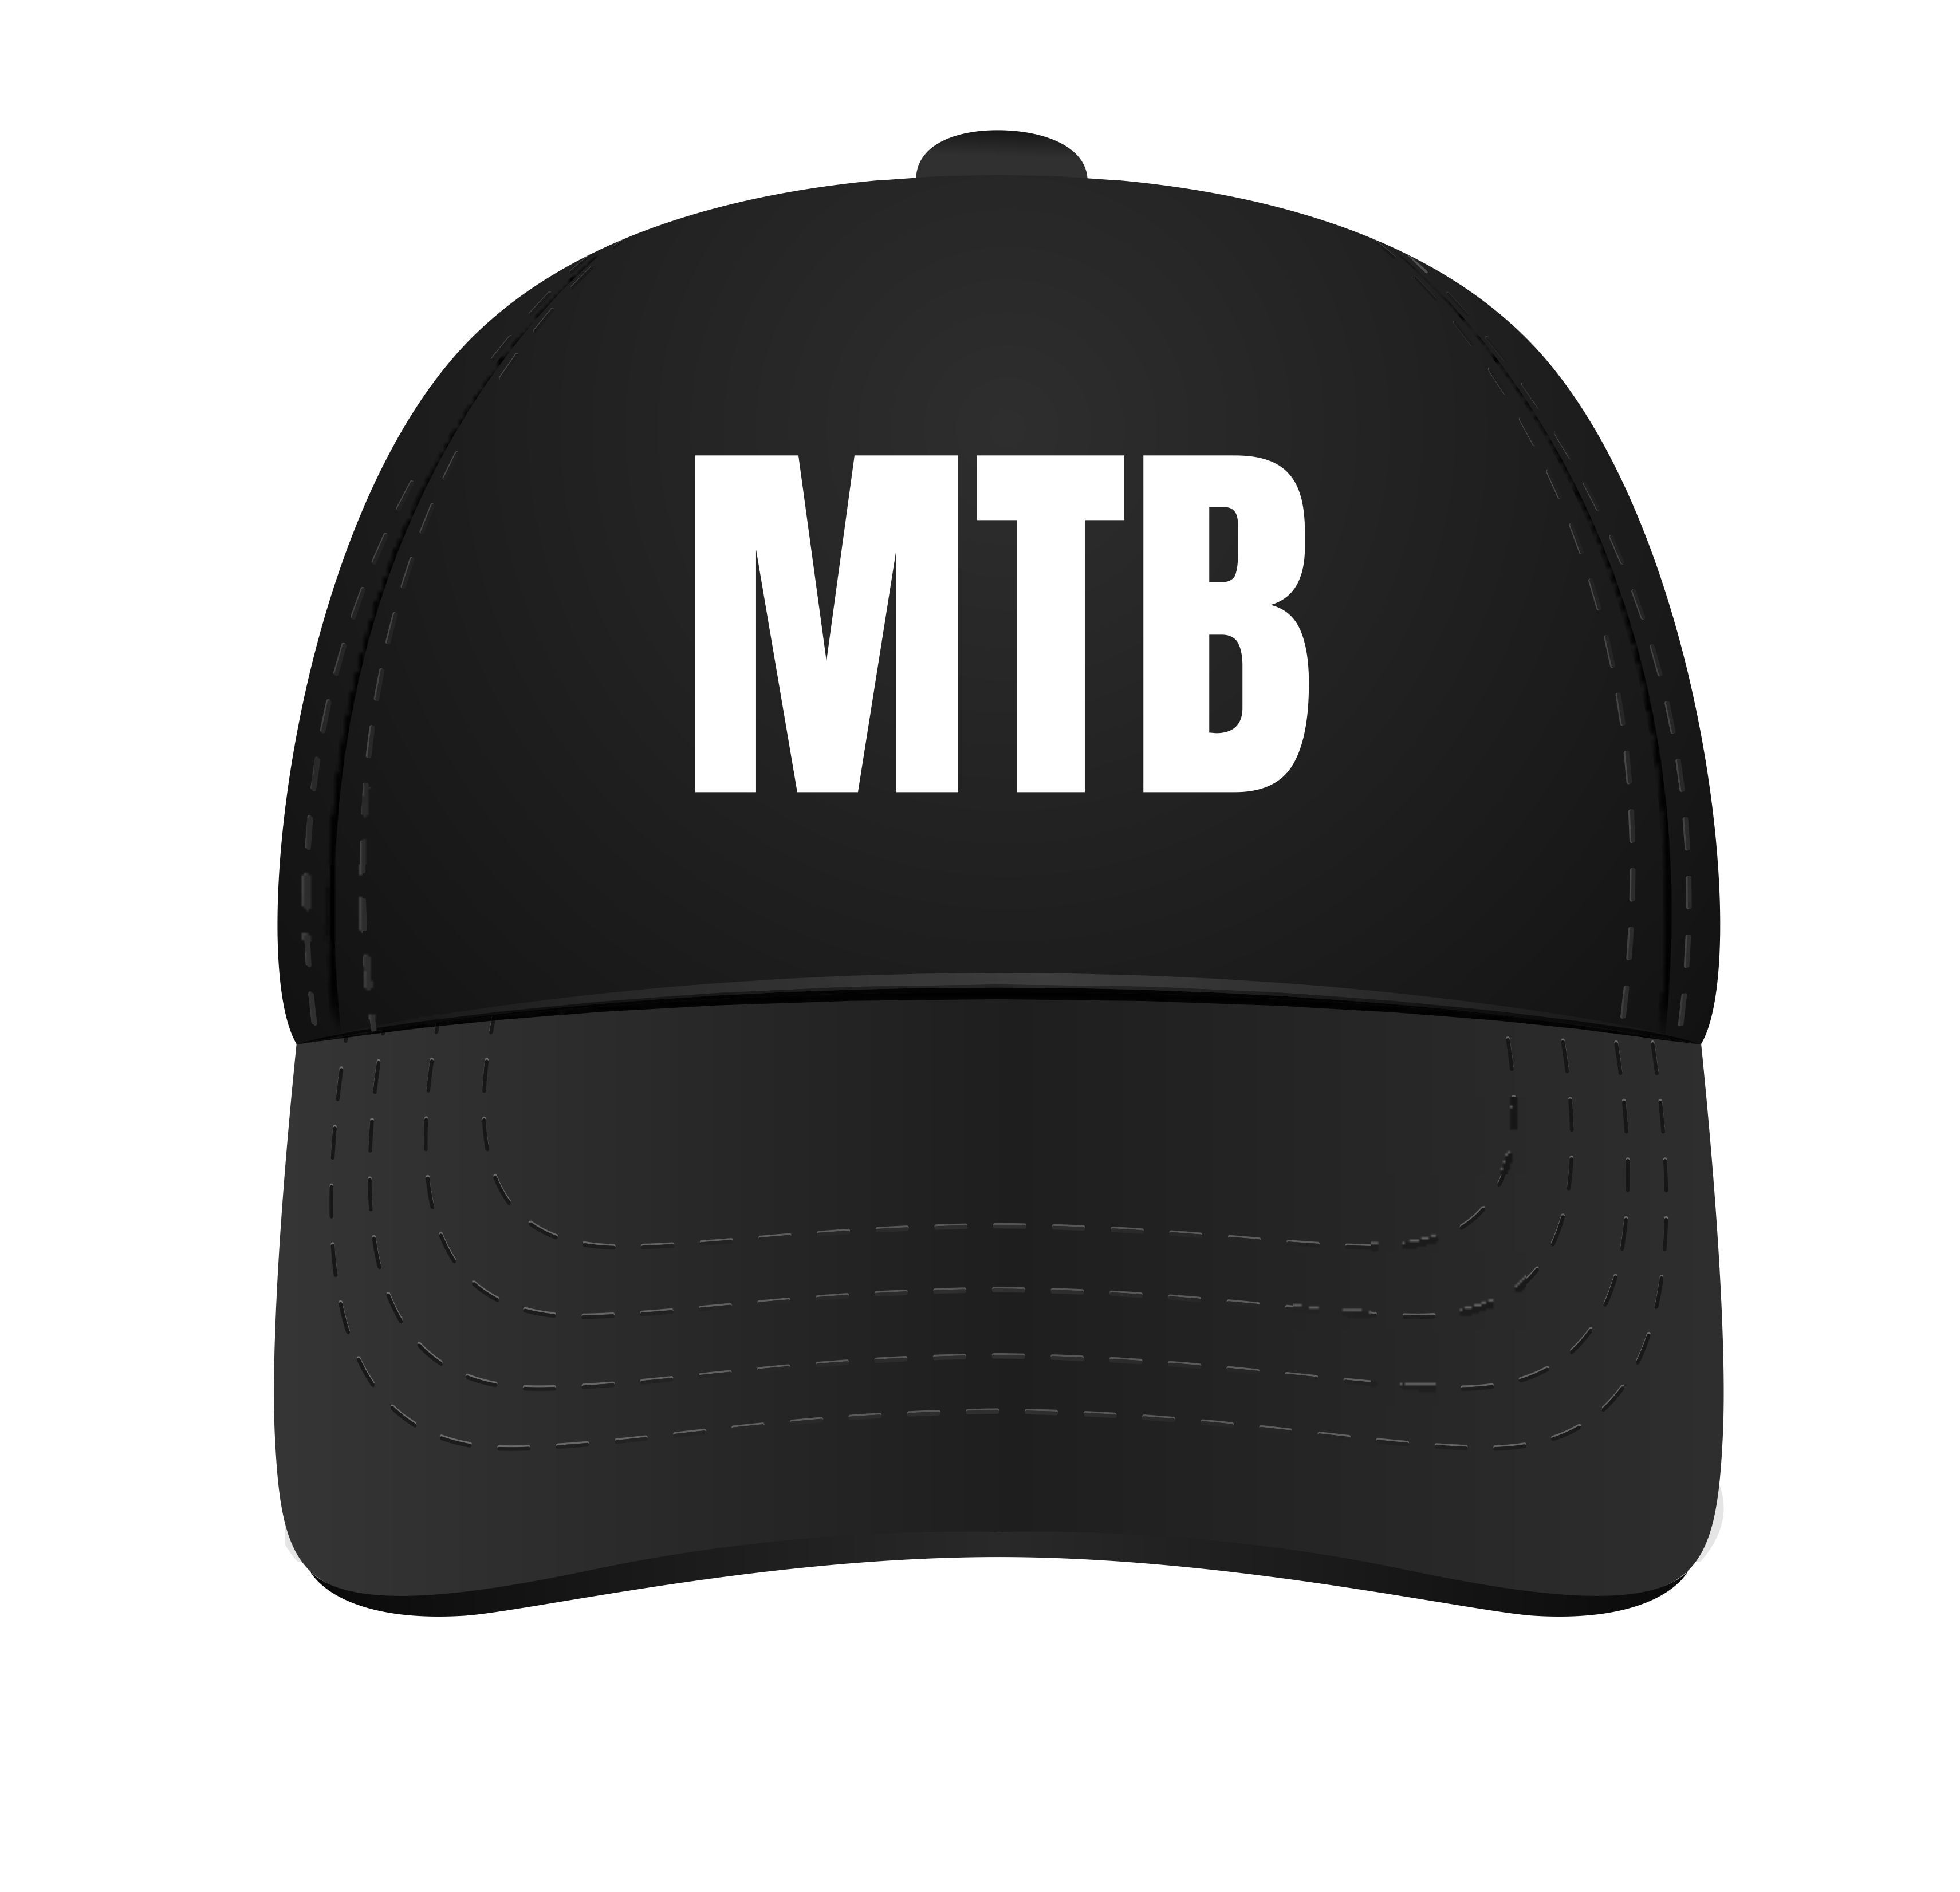 zwart petje met tekst MTB mountainbike